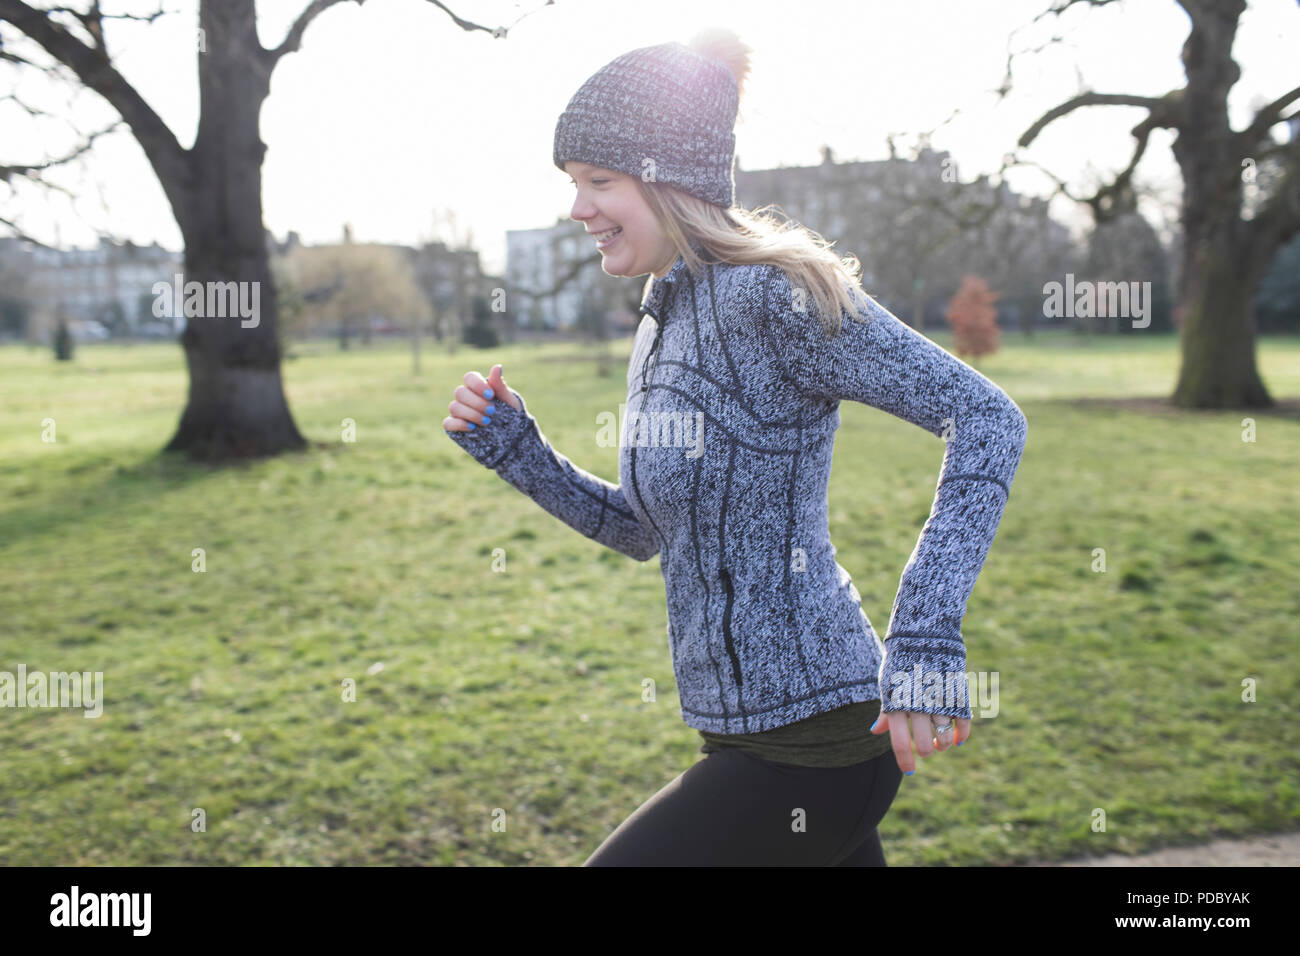 Smiling female runner running in sunny park Stock Photo